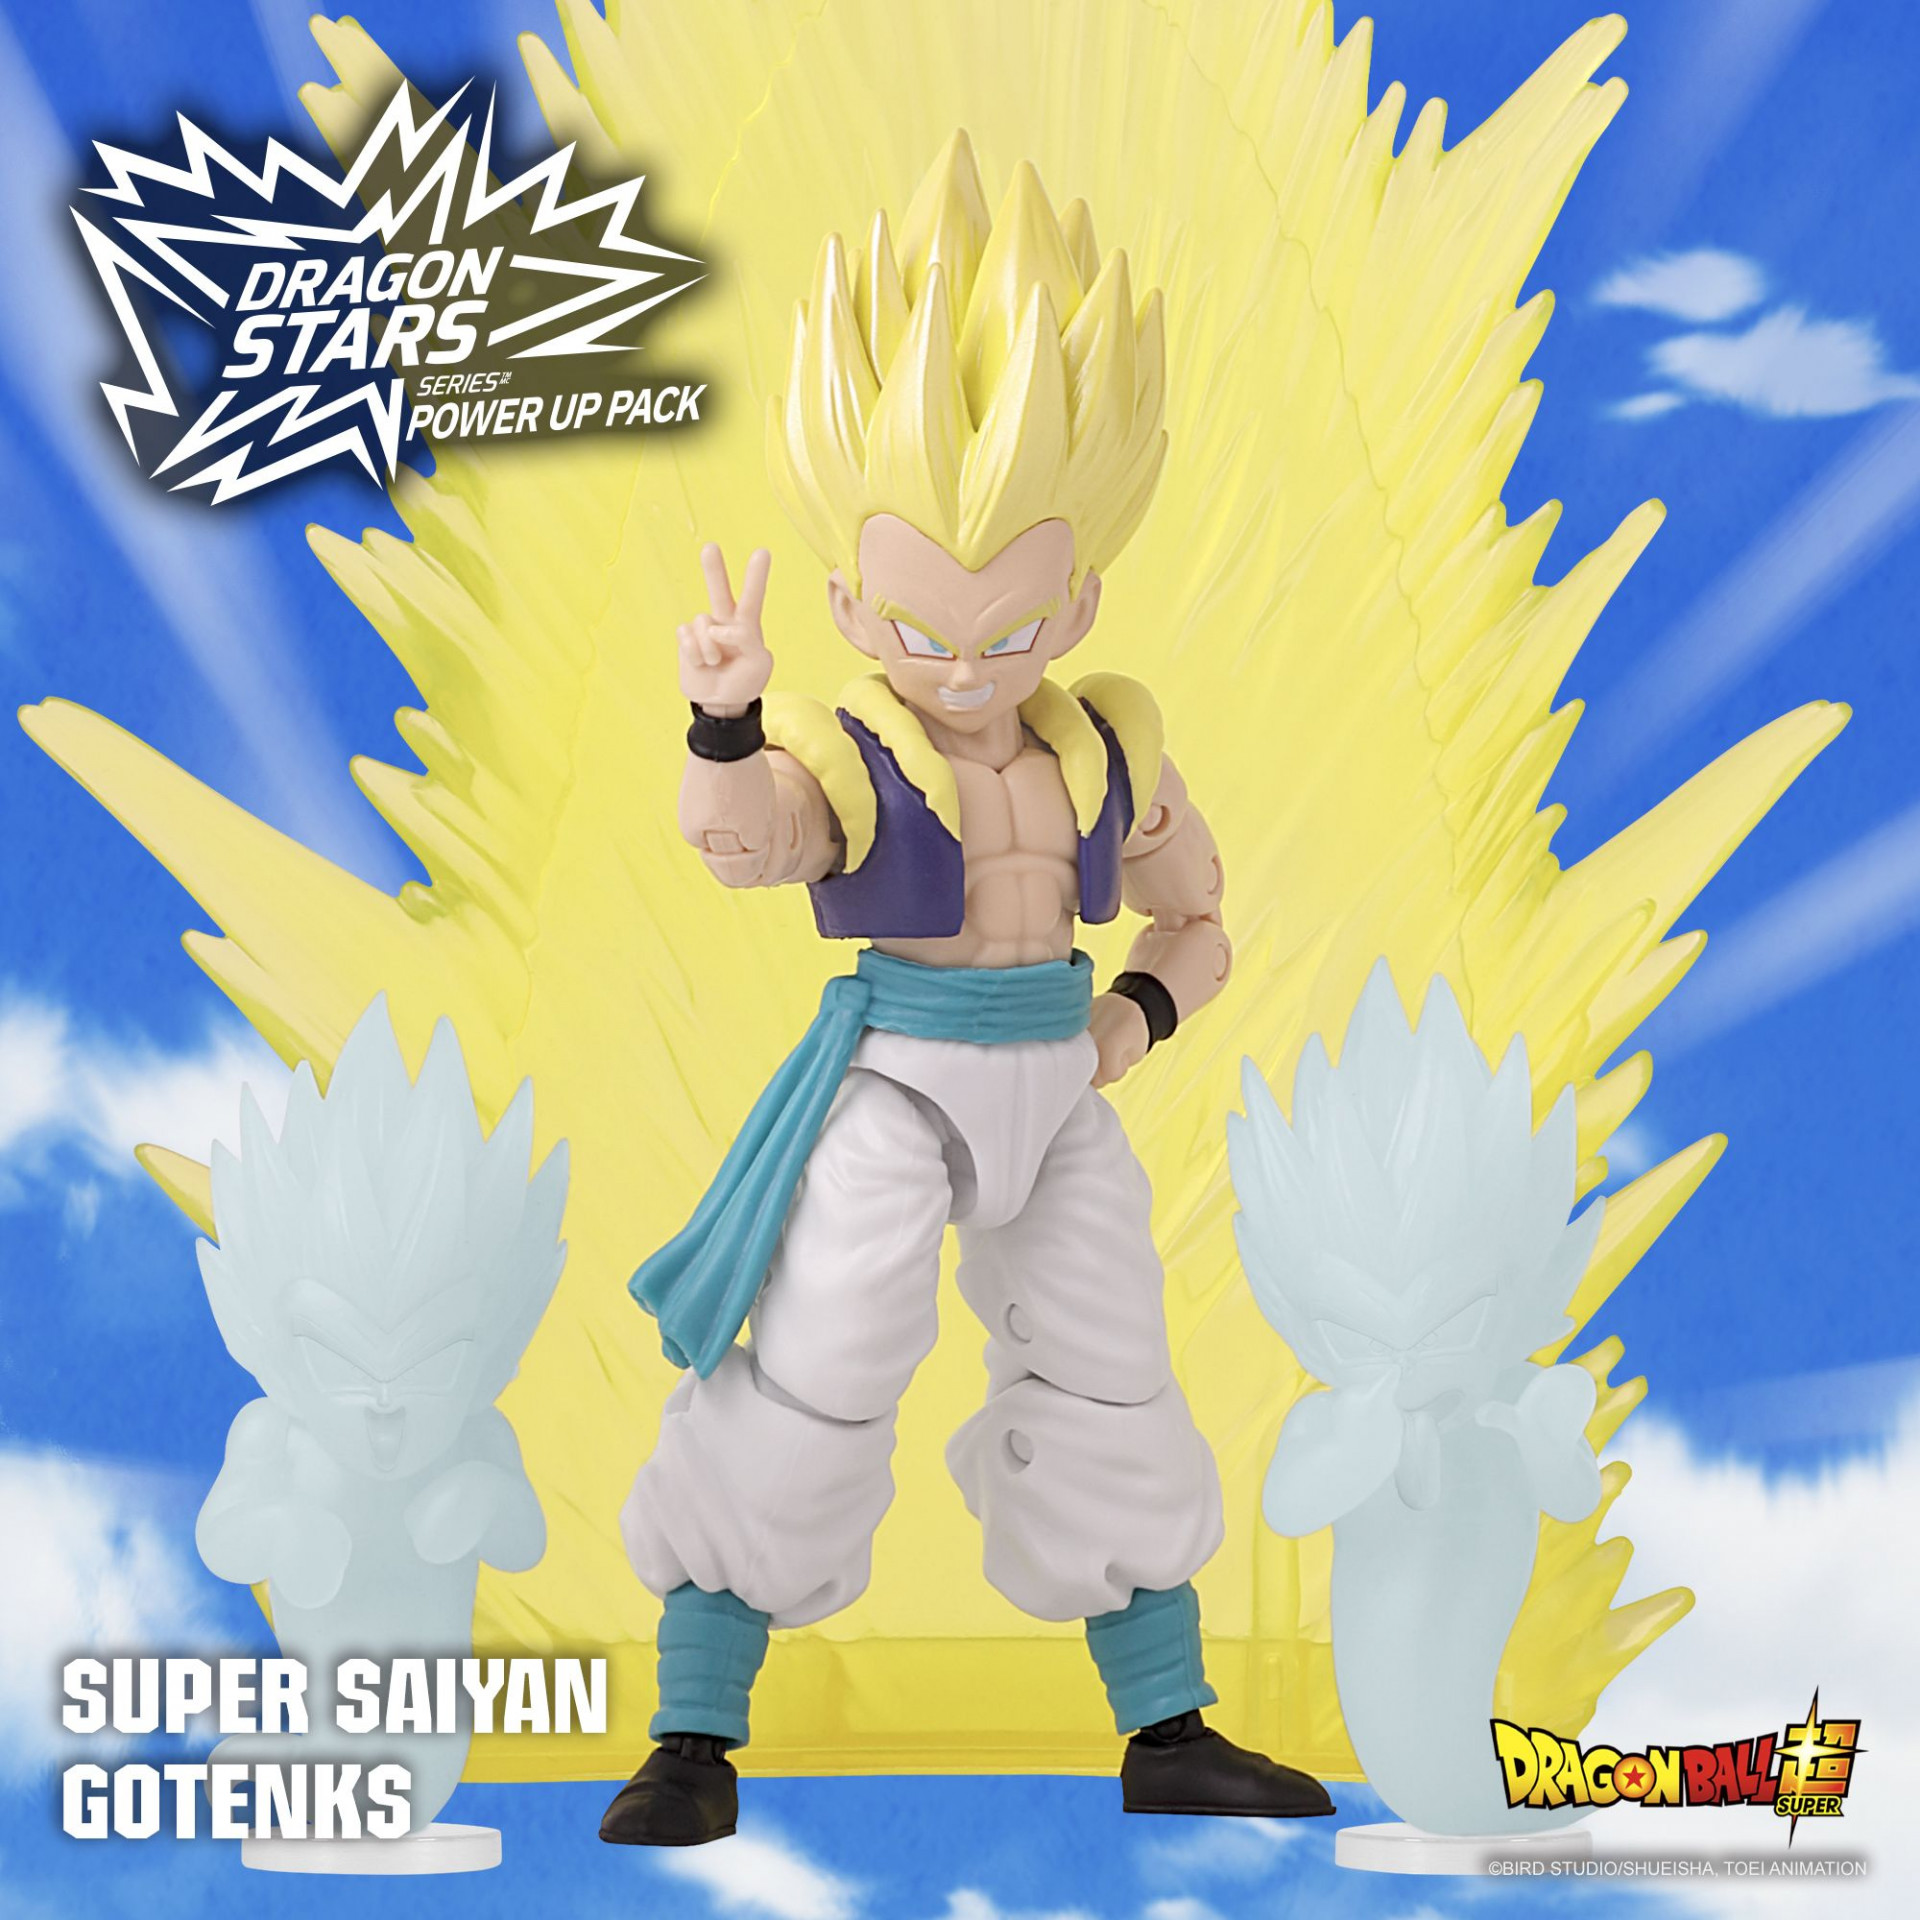 Le Super Saiyan Gotenks arrive dans le Pack Power Up de la série Dragon Stars !